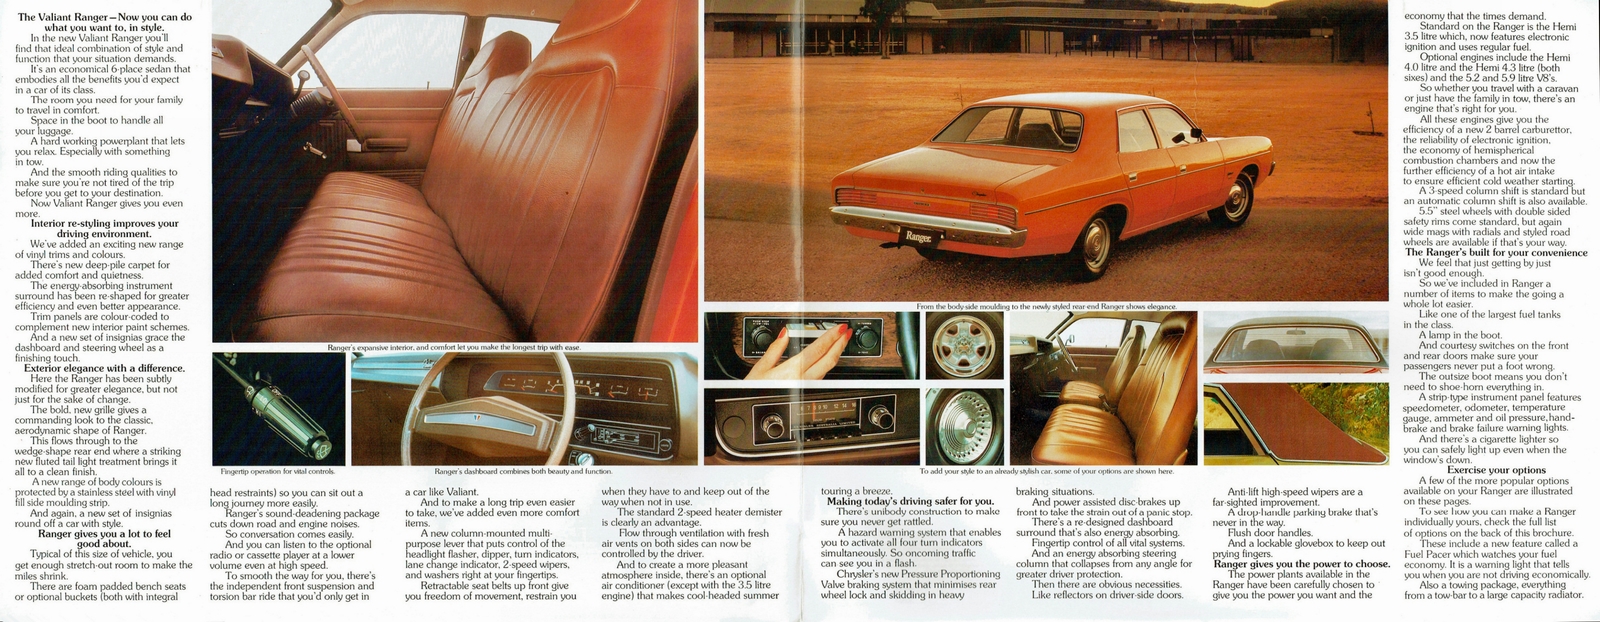 n_1975 Chrysler VK Valiant Ranger-02-03.jpg